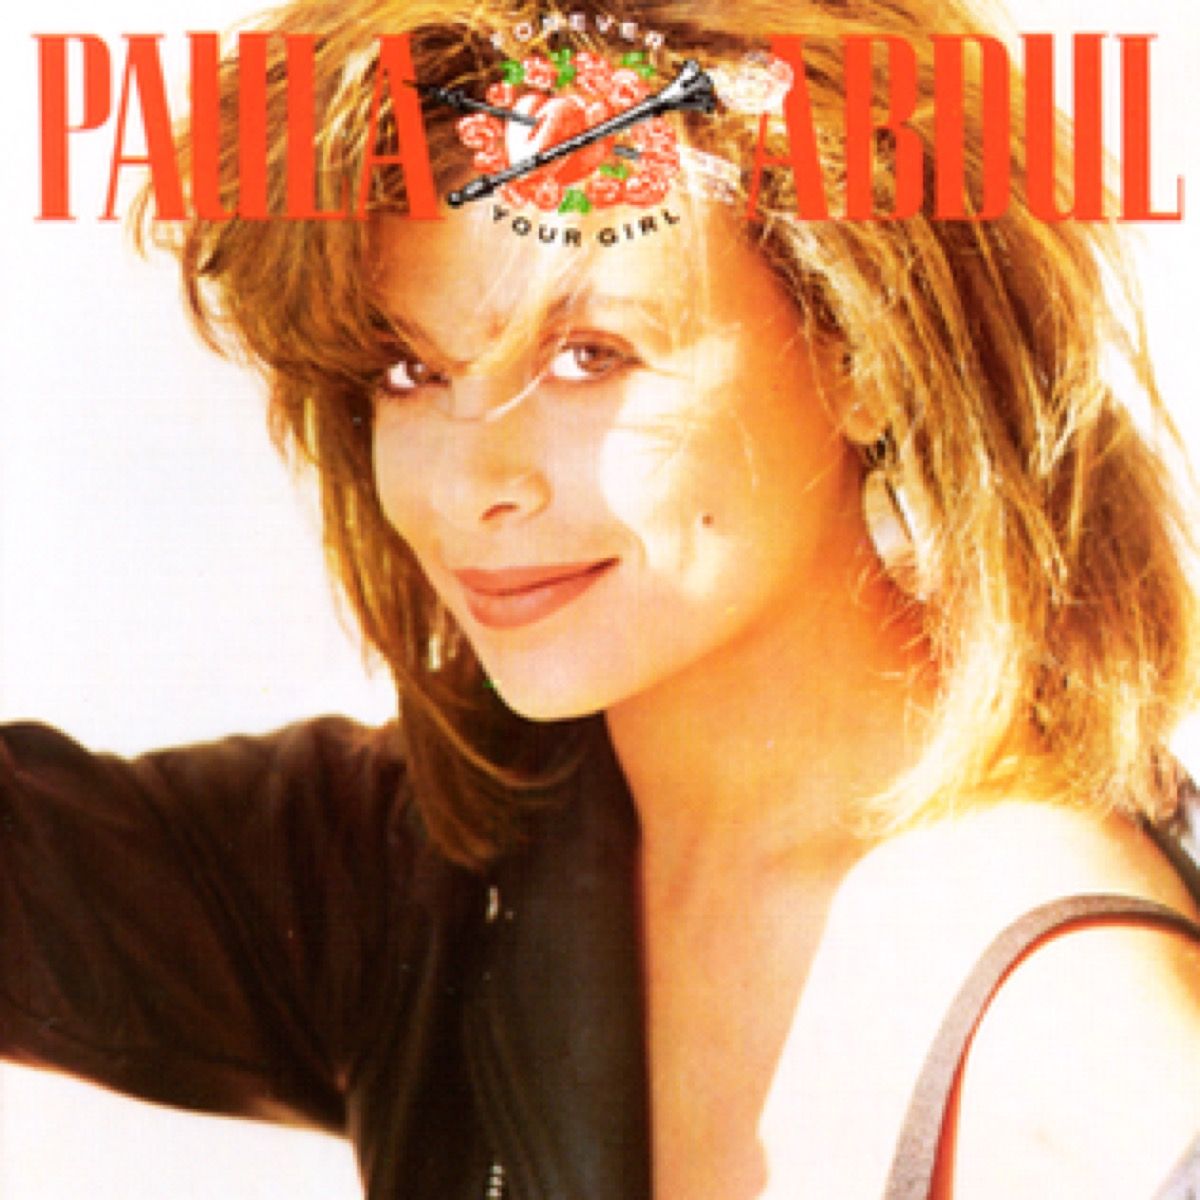 Forever Your Girl od Paula Abdul, obal alba